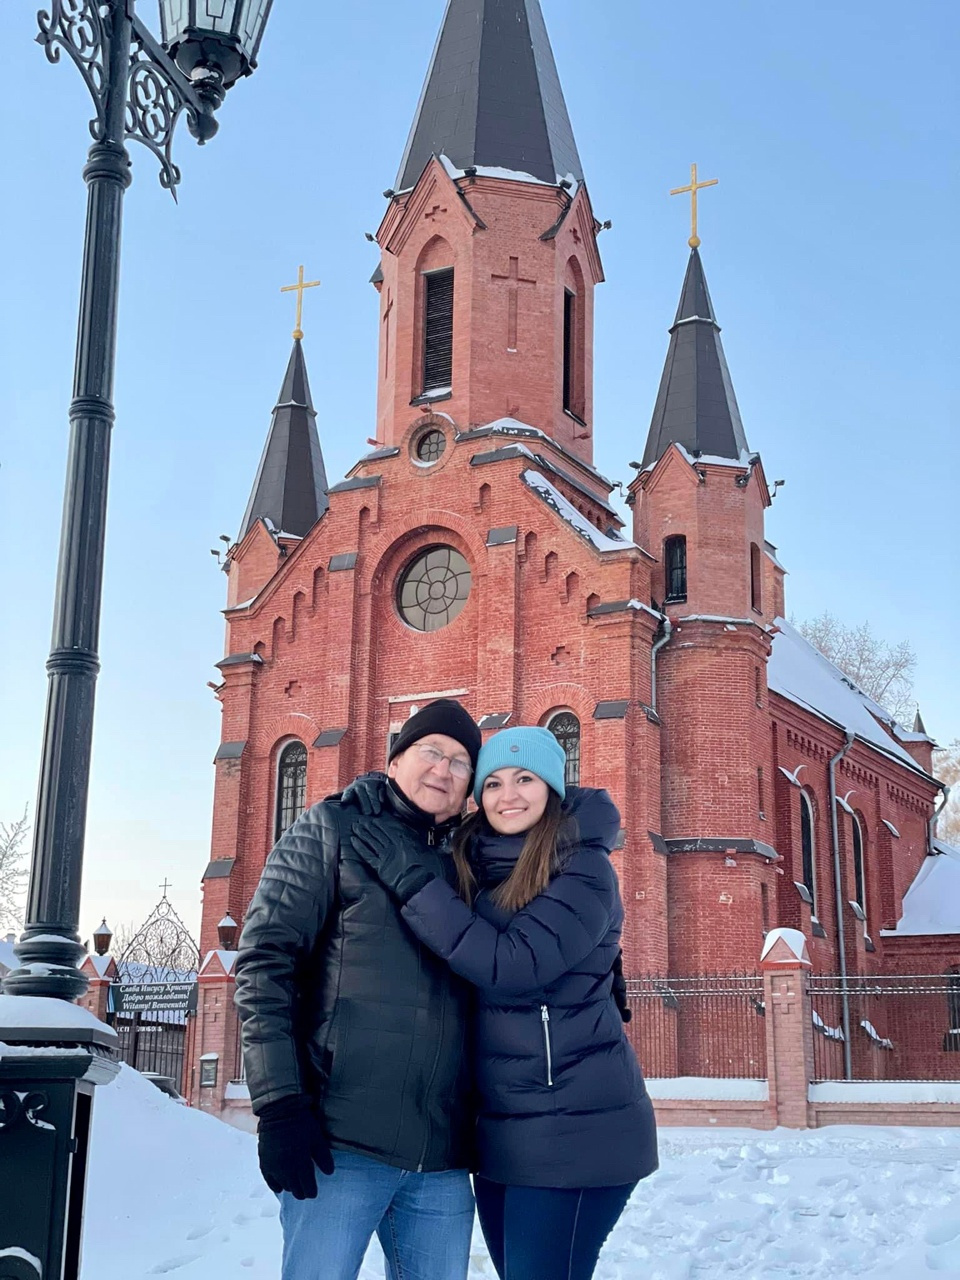 Ана с папой позируют на фоне католического храма Пресвятой Троицы в Тобольске. Им обоим безумно понравился этот город